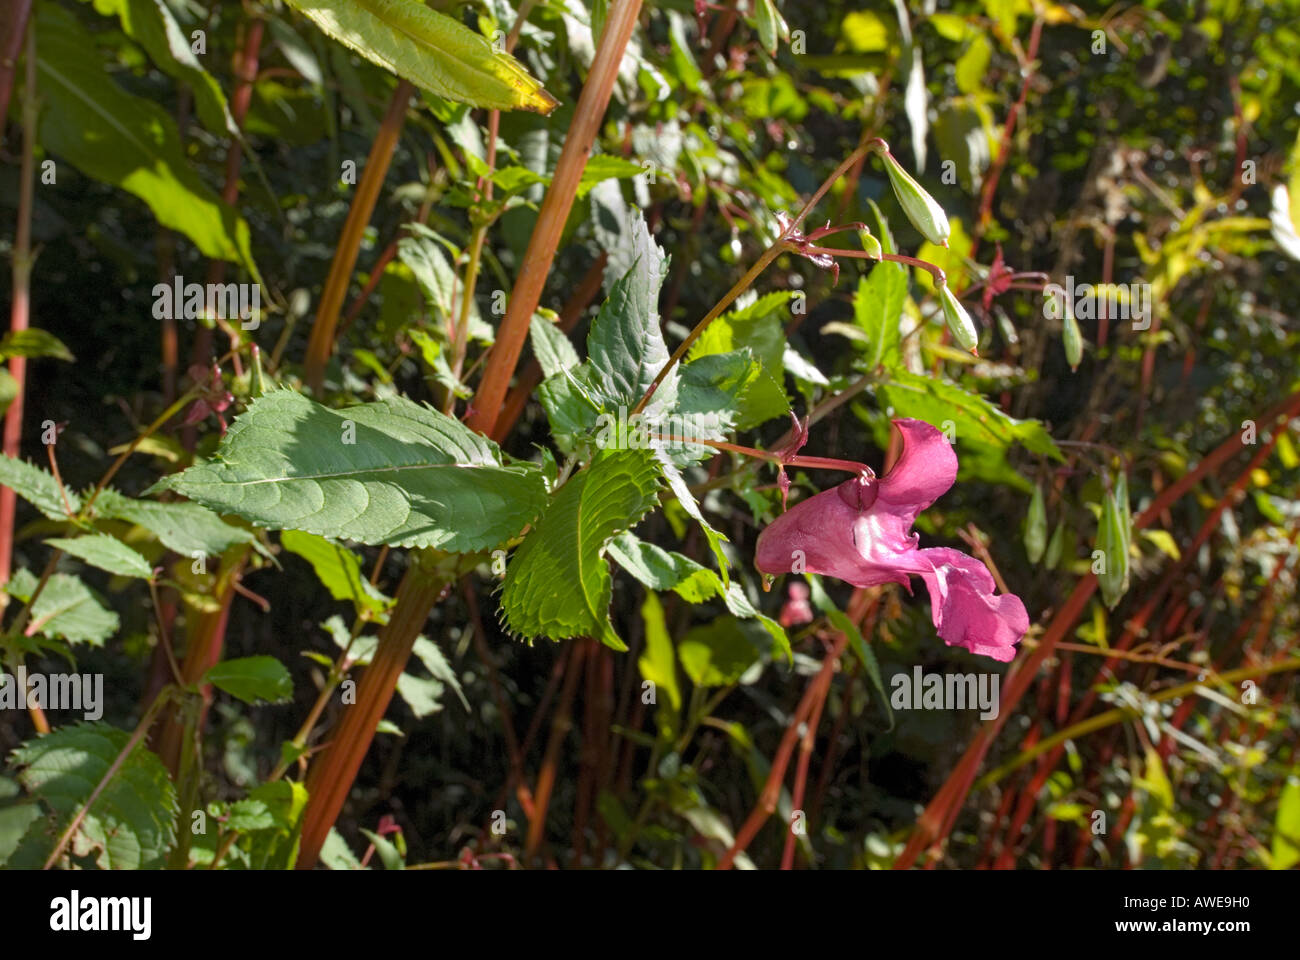 Impatiens glandulifera Emscherorchidee de las Balsamináceas Foto de stock